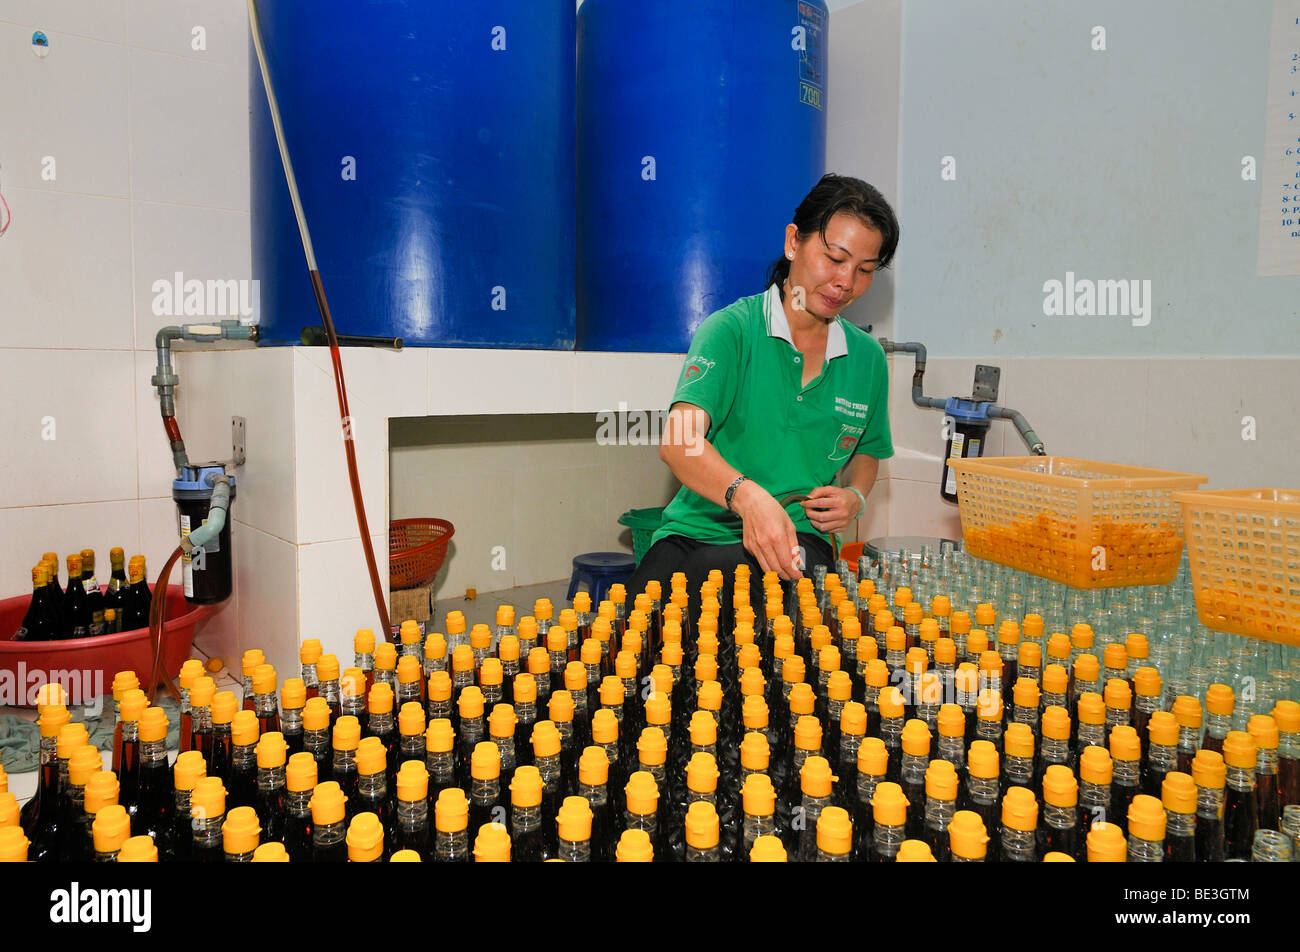 Mujer Vietnamita durante el embotellado de la tradicional salsa de pescado vietnamita Nuoc mam en botellas de vidrio con tapón de plástico amarillo Foto de stock